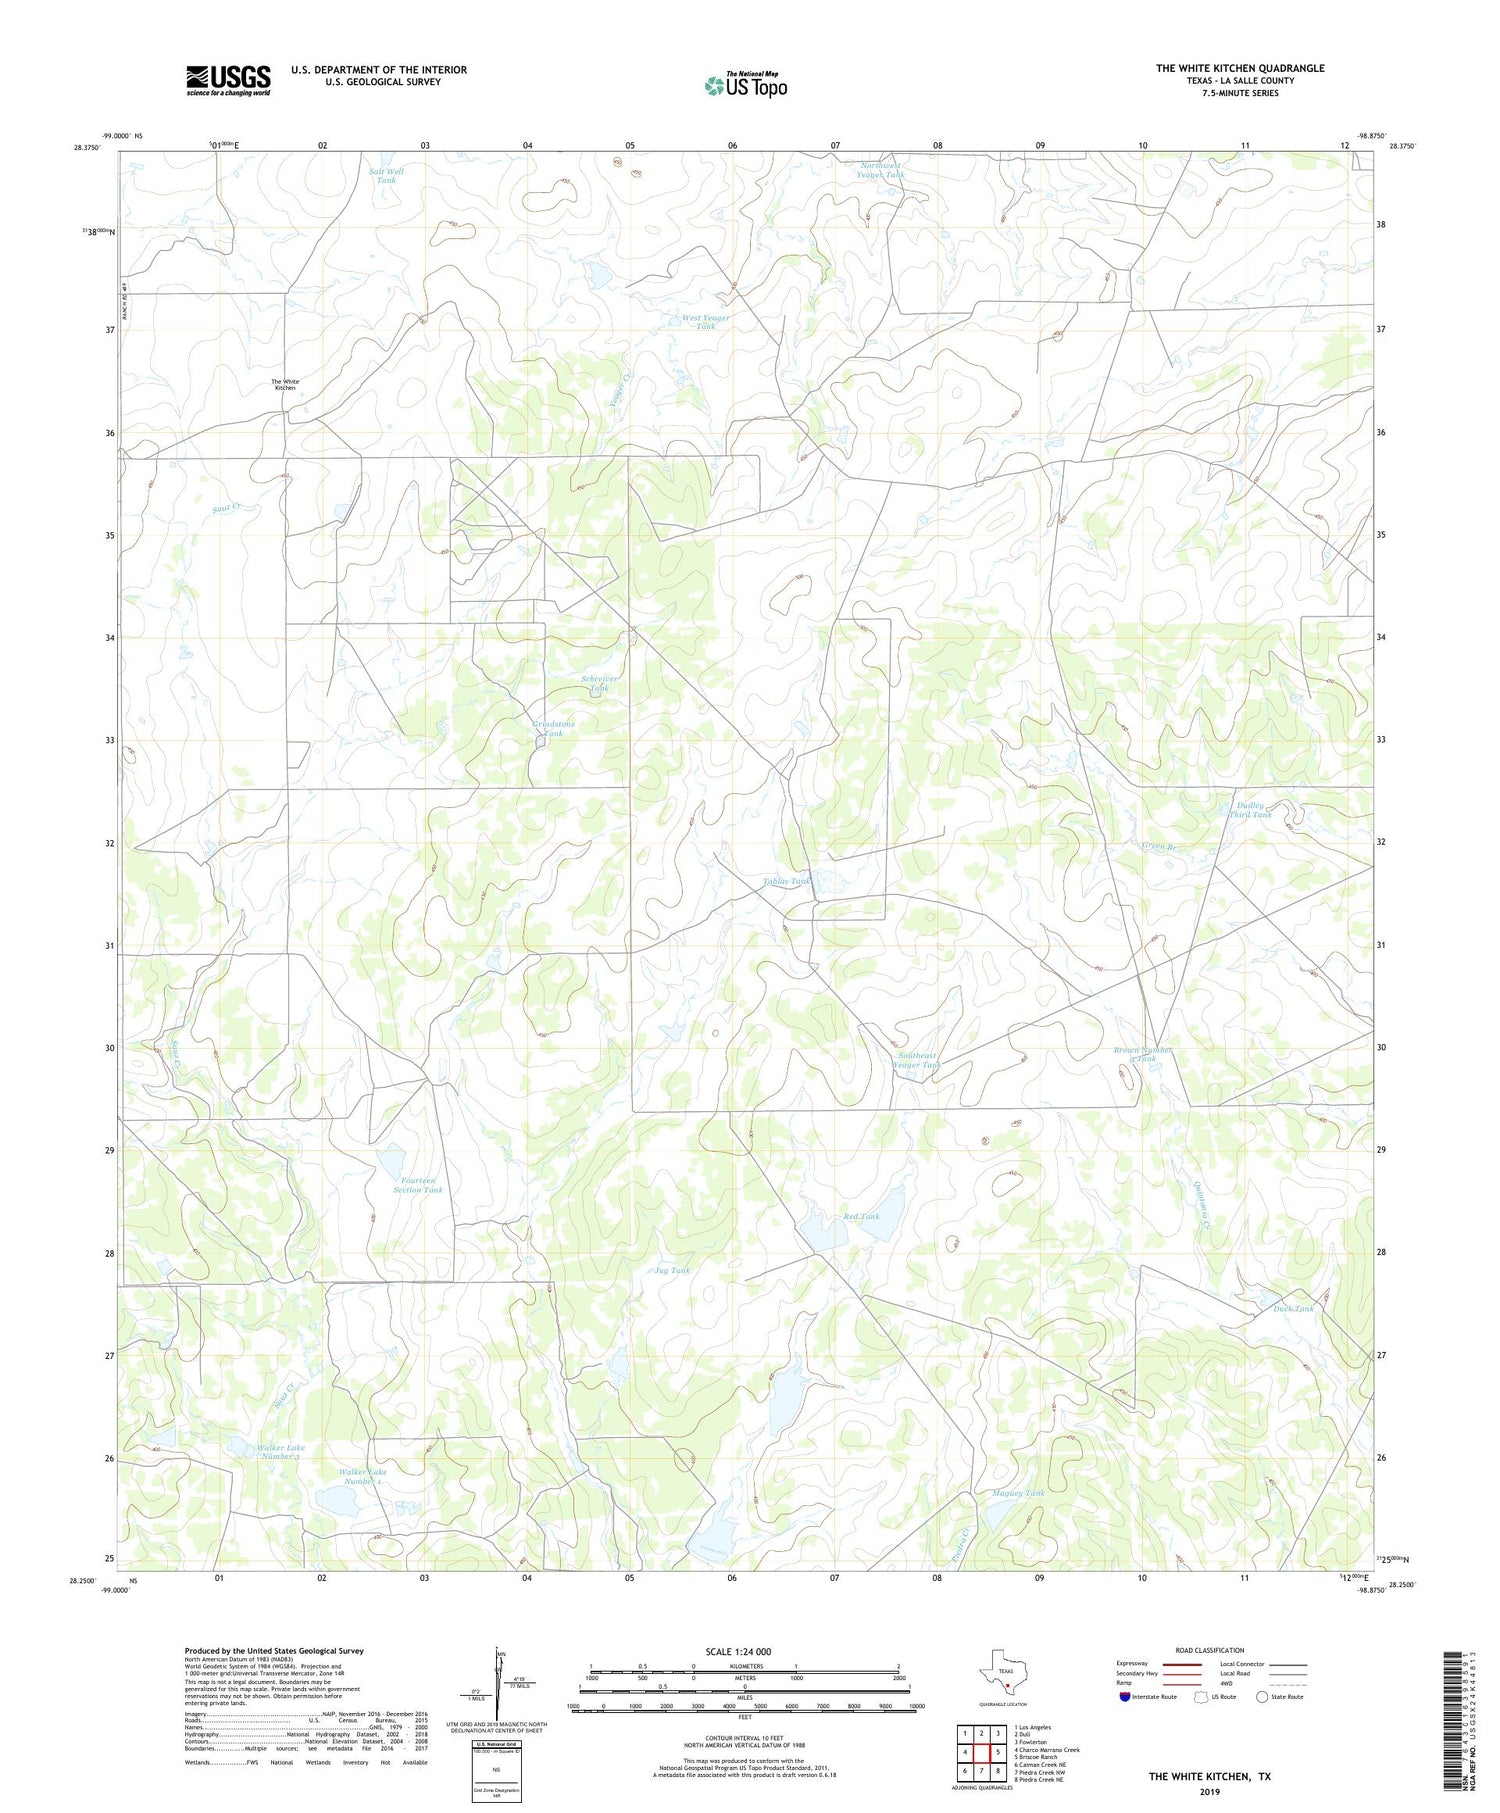 The White Kitchen Texas US Topo Map Image